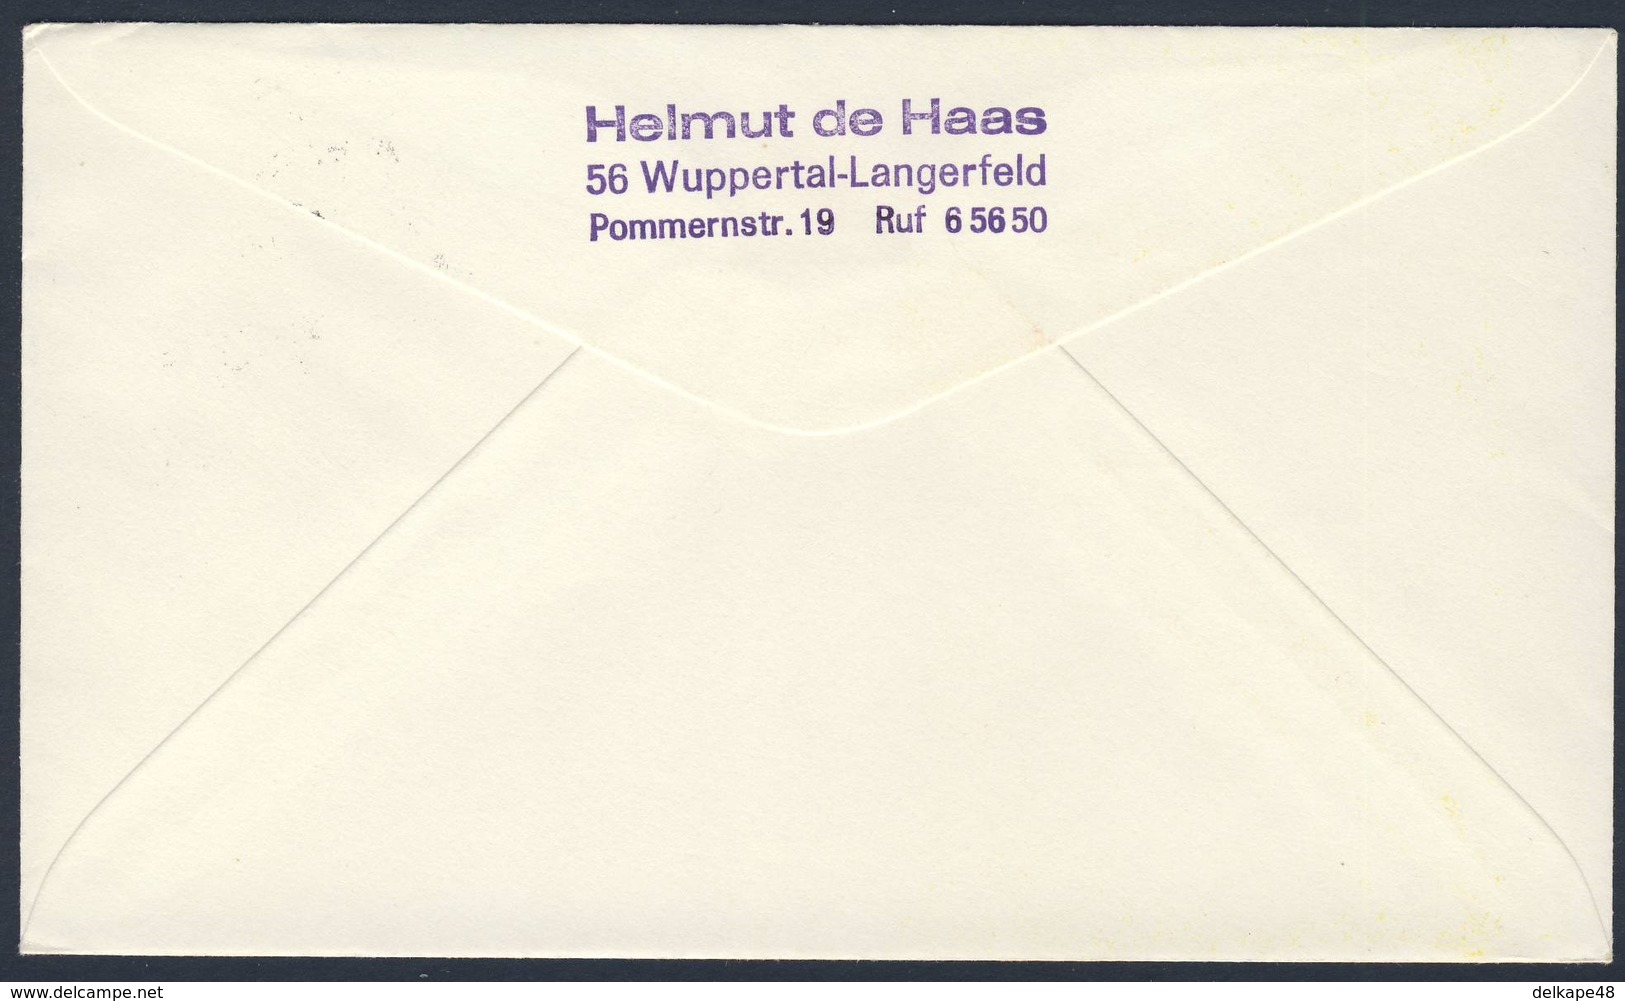 Deutschland Germany 1967 Brief Cover - 10 Jahre Sammlergemeinschaft Im Bundesbahn-Sozialwerk, Briefmarkenausstellung - Treinen